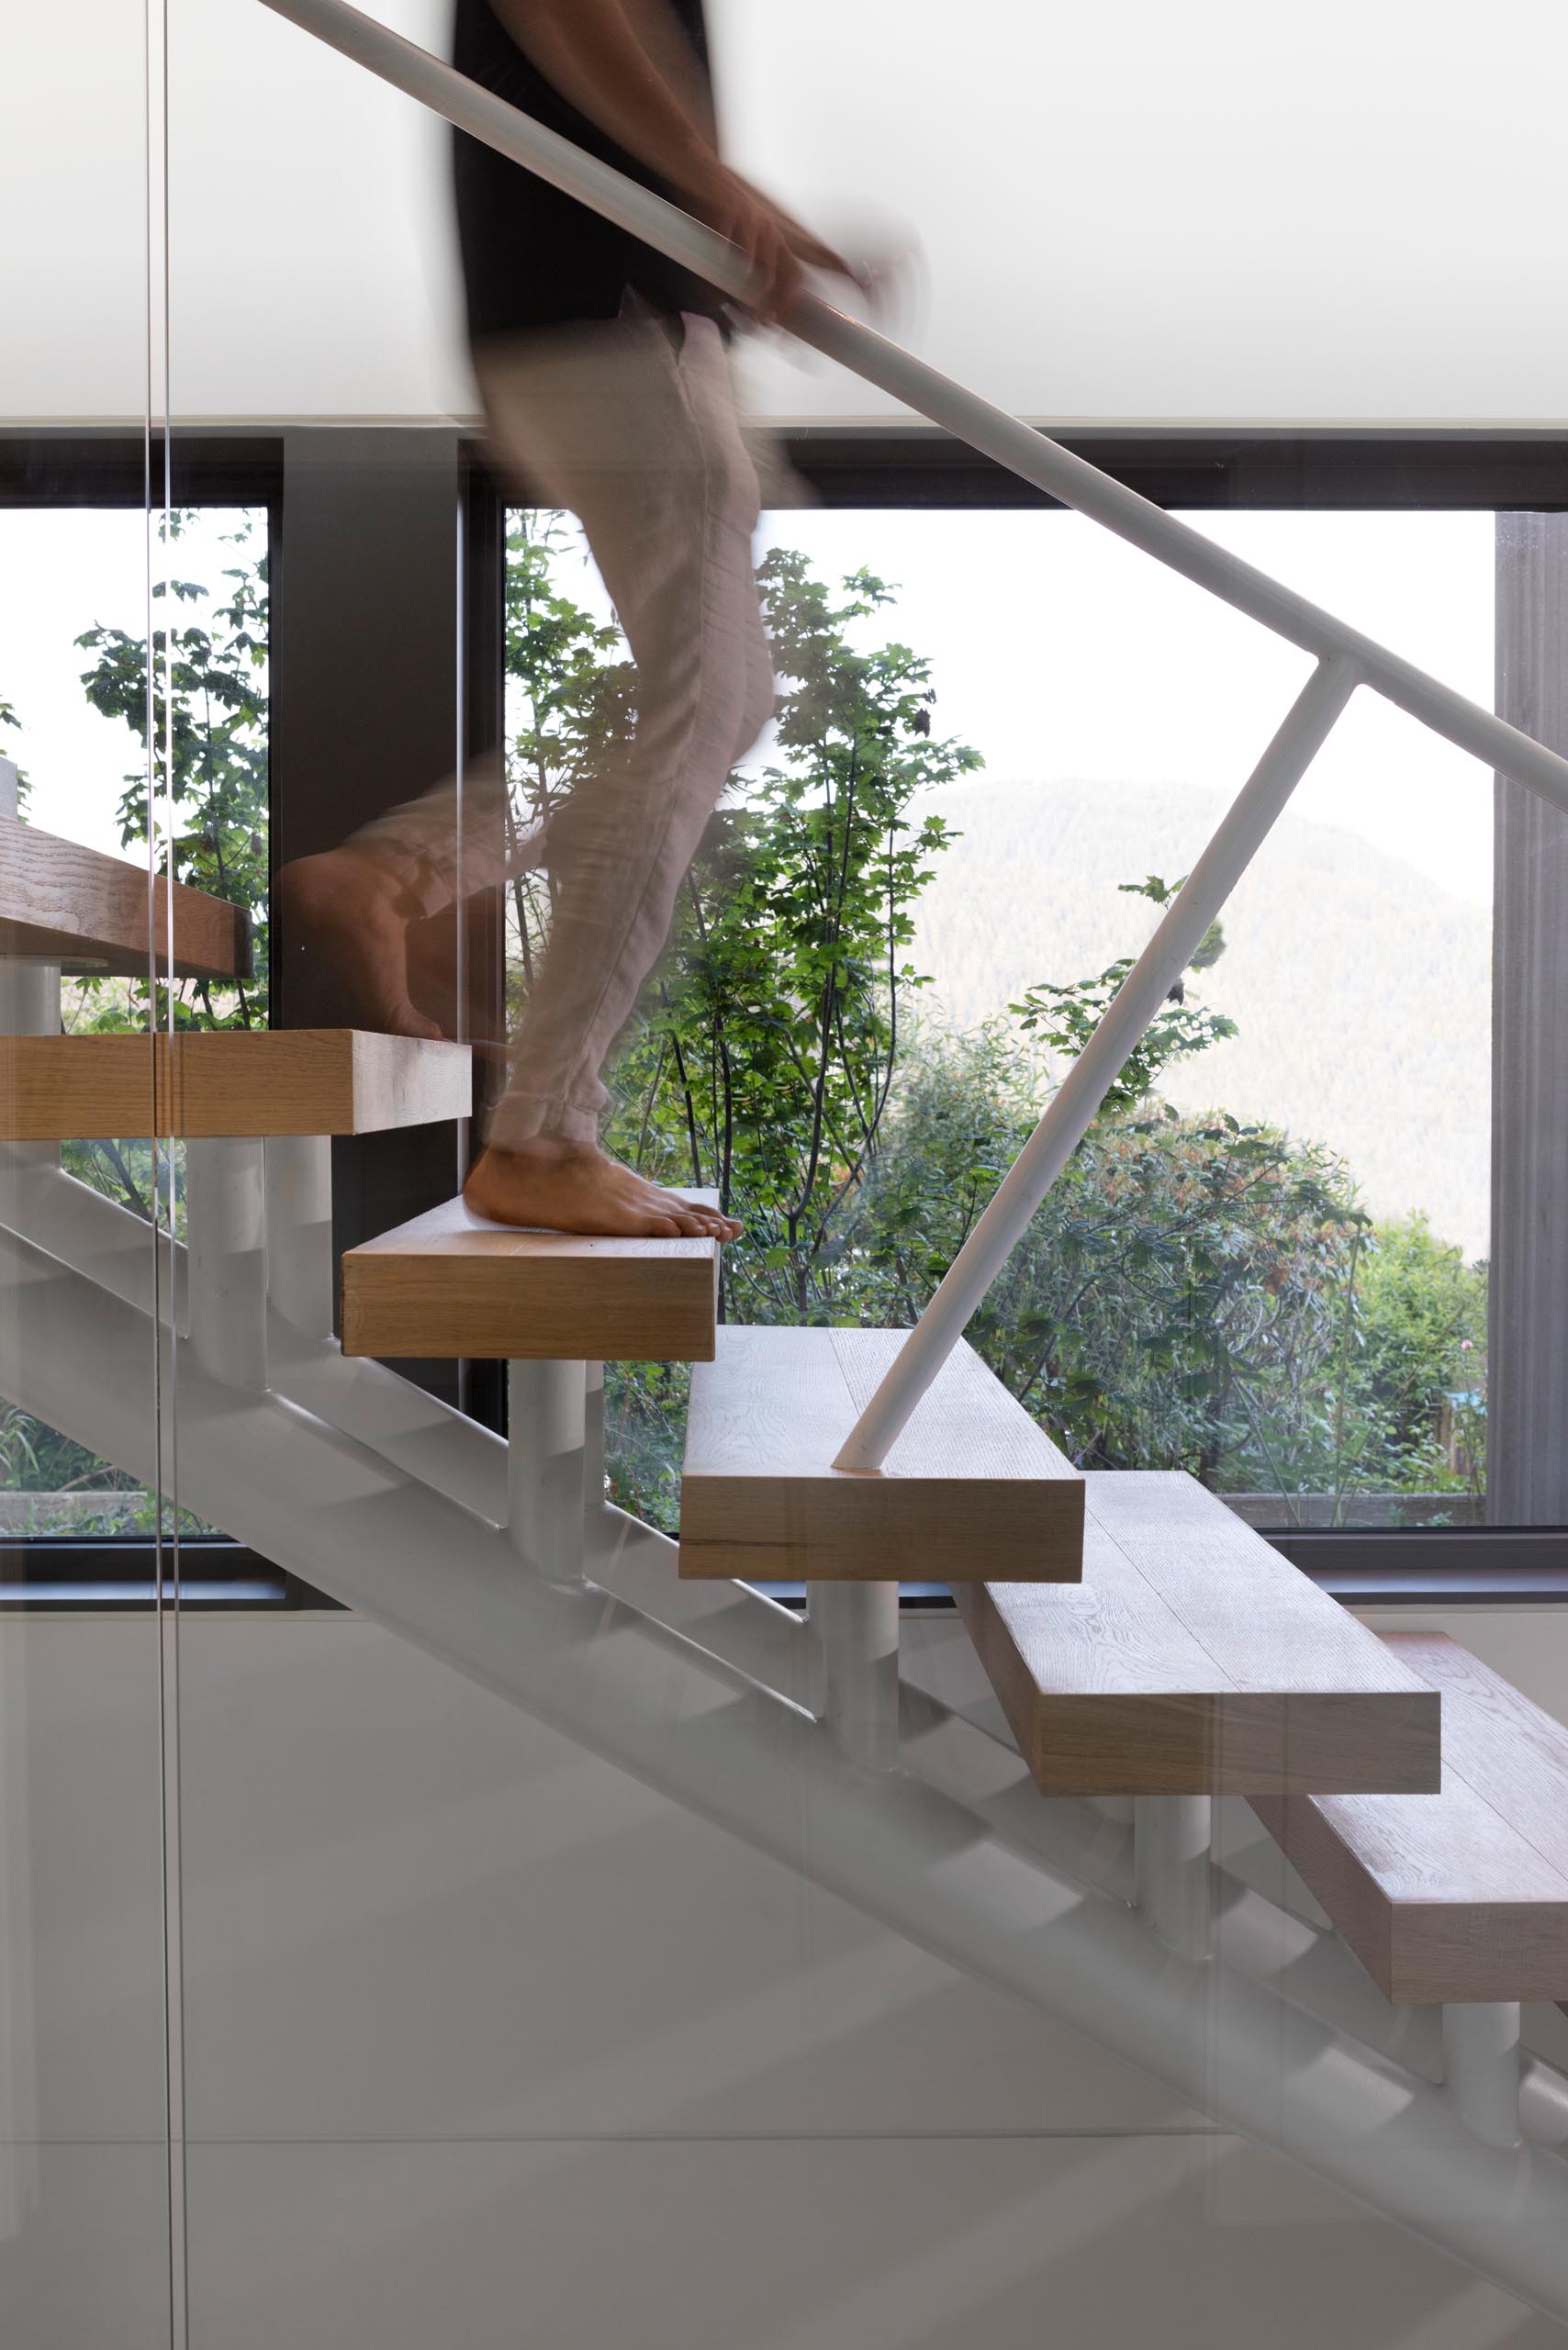 Деревянные ступени лестниц поддерживаются белой рамой, а стекло используется в качестве элемента безопасности, а также позволяет свету из окна проходить внутрь.